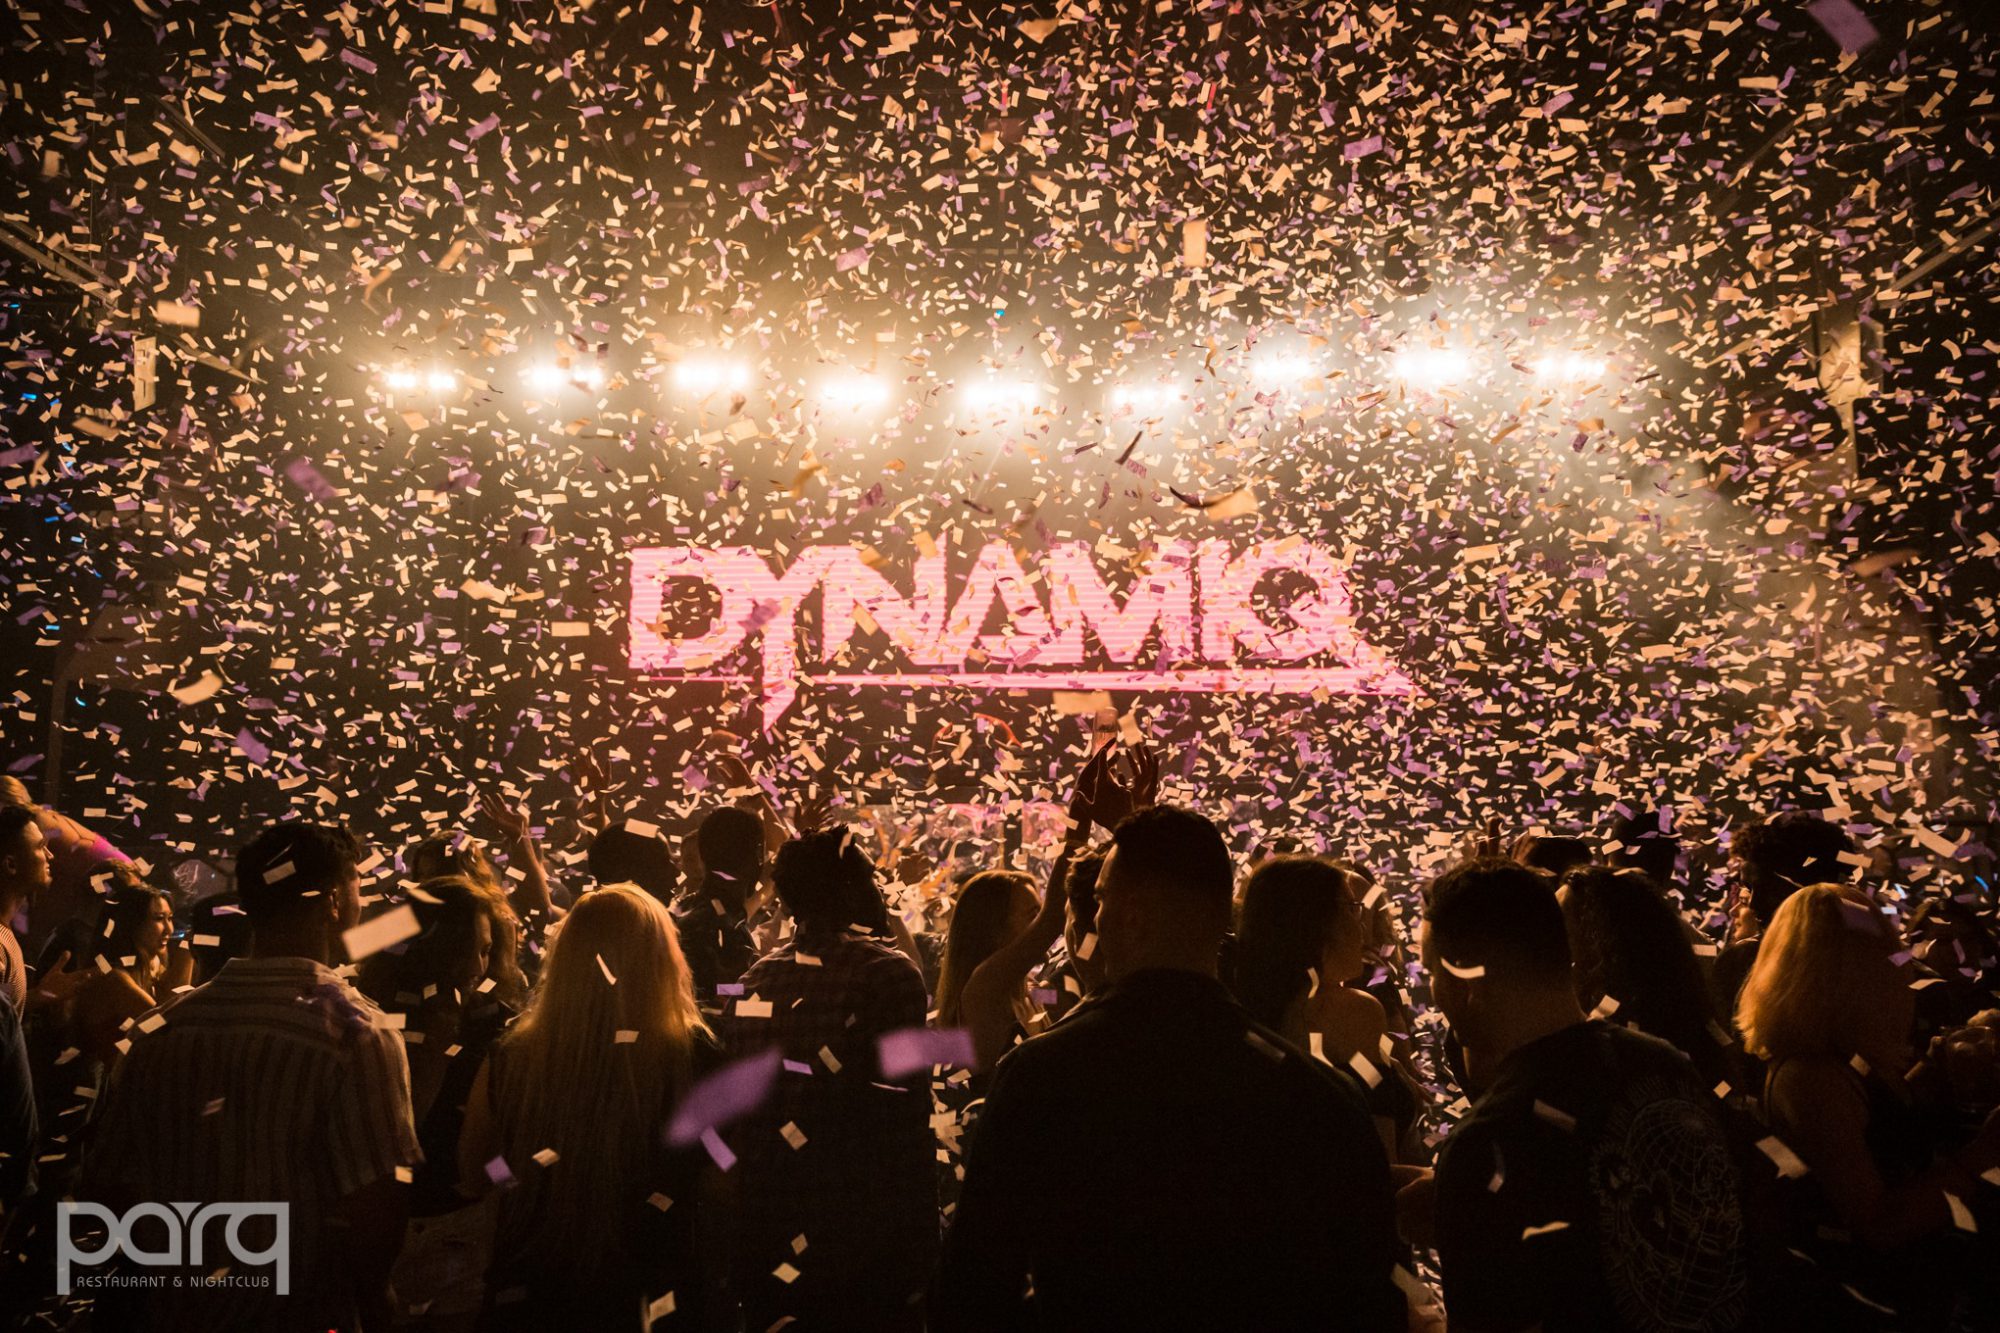 DJ Dynamiq at Parq San Diego 2019